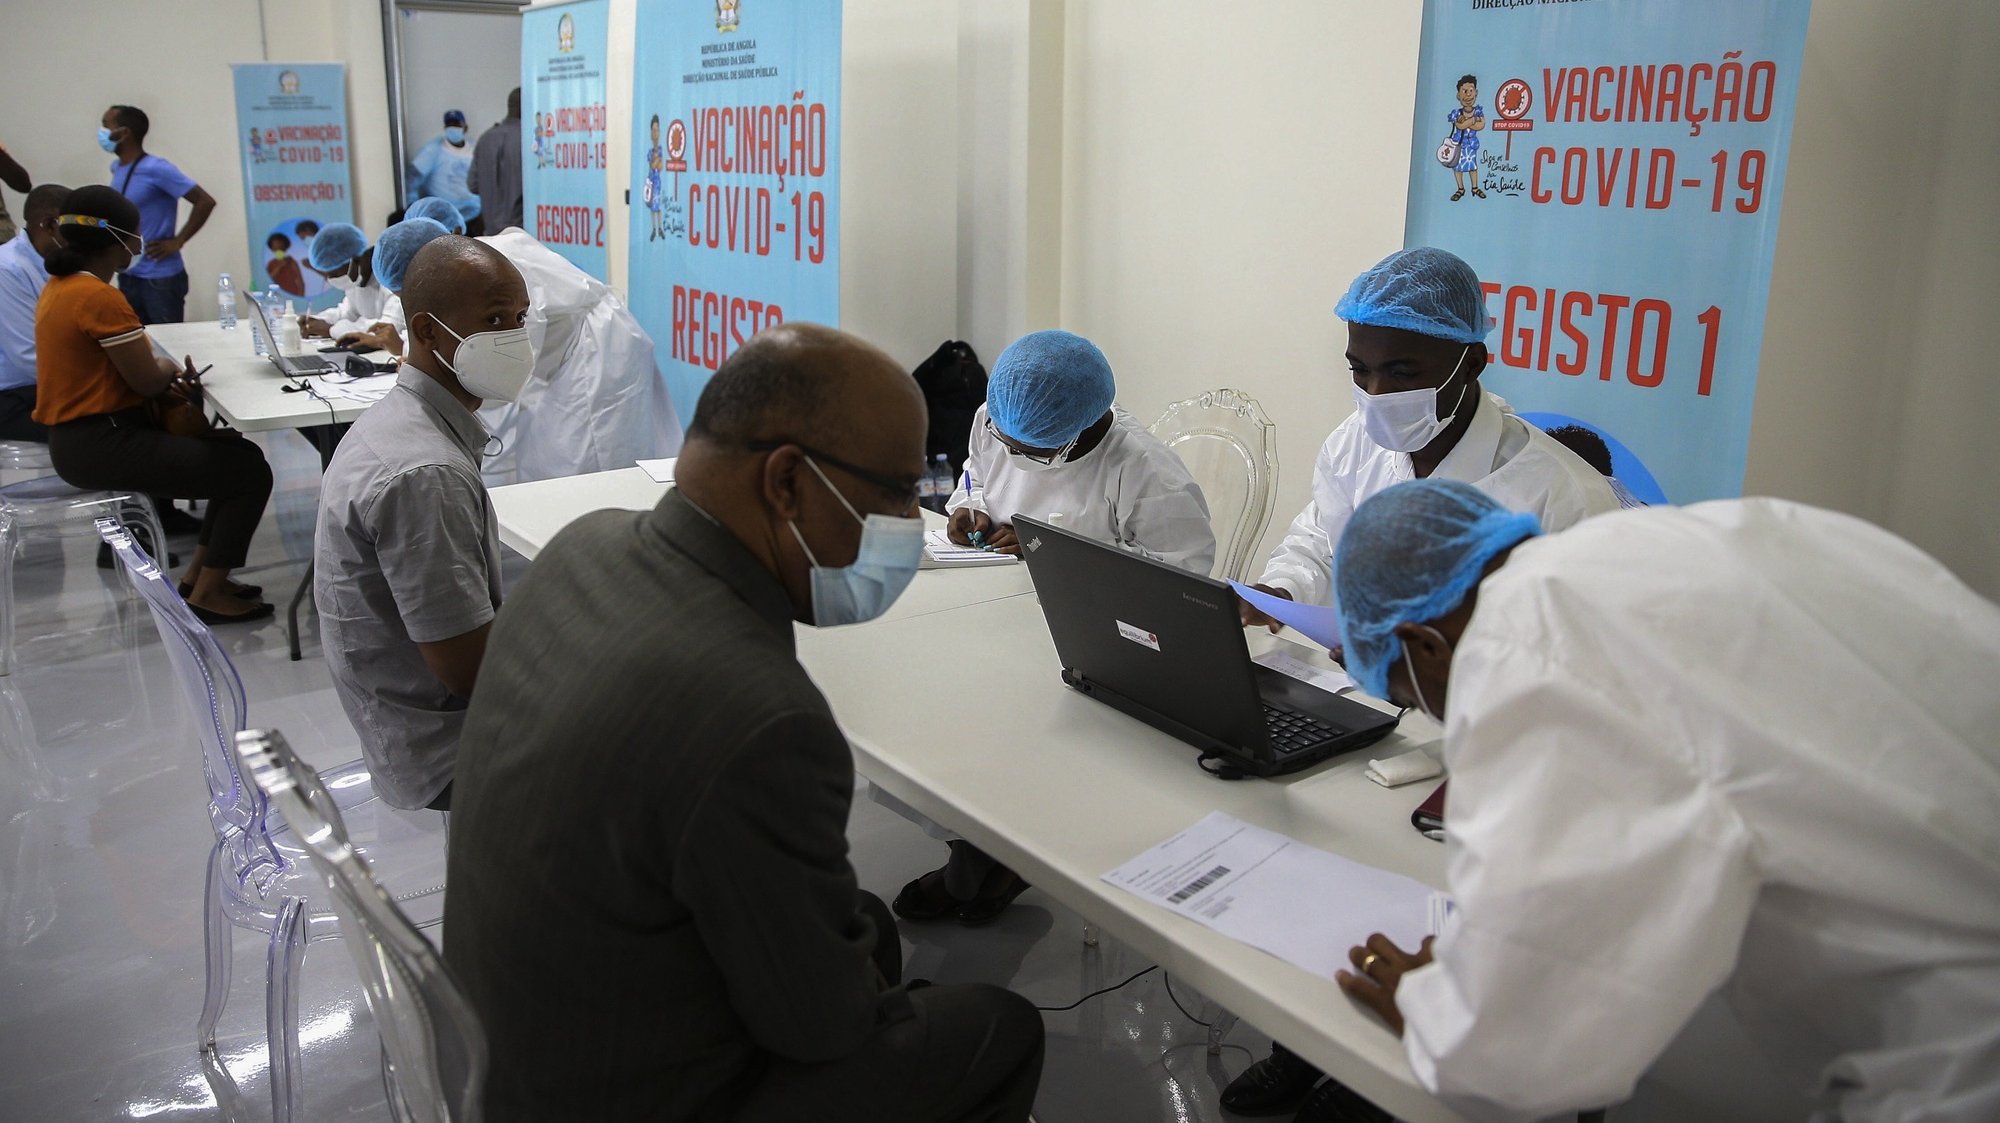 Vários pacientes aguardam na sala de vacinação do depósito central de vacinas de Angola, no dia em que chegaram ao país as primeiras 624.000 doses de vacinas contra a covid-19, no aeroporto Internacional 4 de Fevereiro, que contou com a presença da ministra da Saúde, Silvia Lutucuta (ausente da foto), no âmbito da iniciativa Covax, Luanda, Angola, 2 de março de 2021. AMPE ROGÉRIO/LUSA